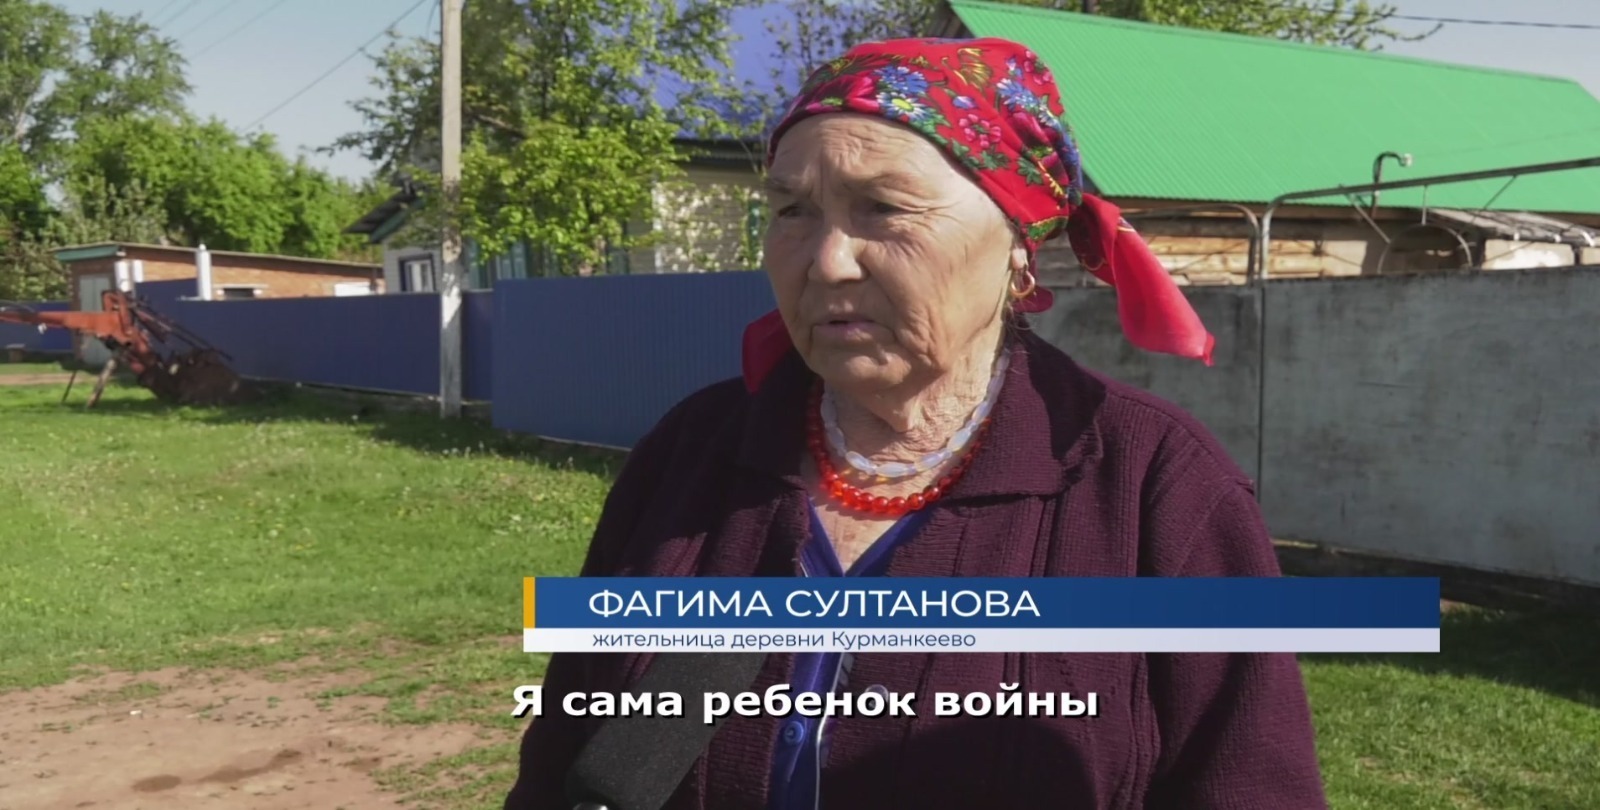 Пенсионерка из Башкирии отправила свой автомобиль участникам СВО